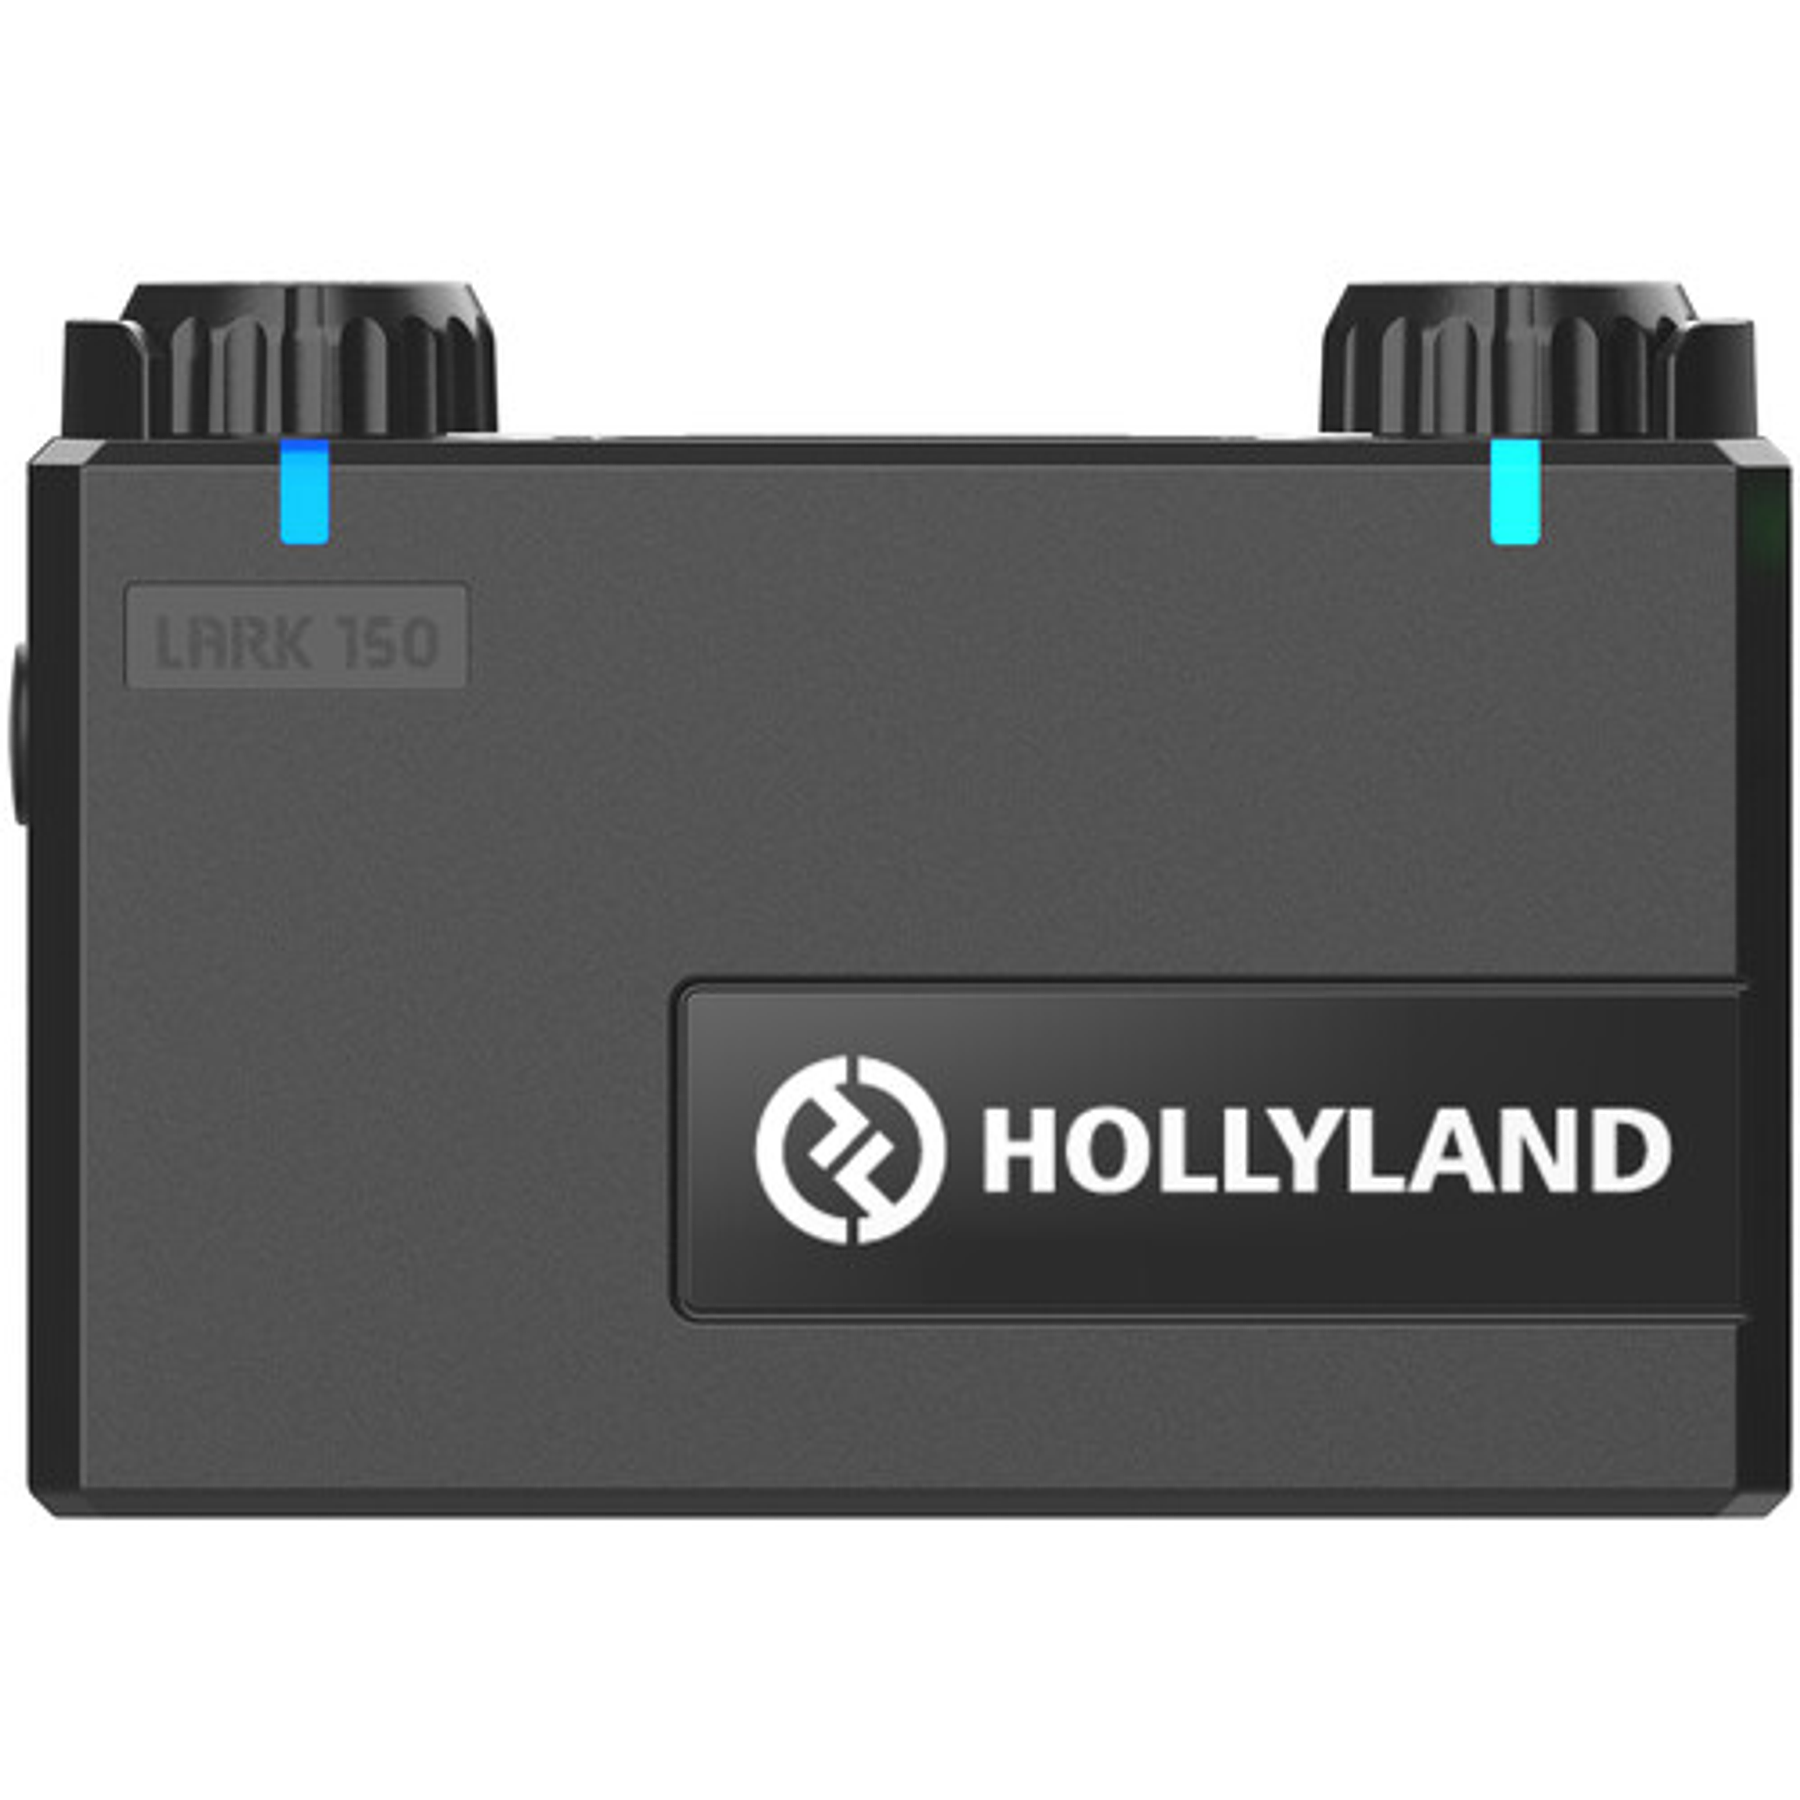 Sistema de micrófono inalámbrico digital compacto para 2 personas Hollyland LARK 